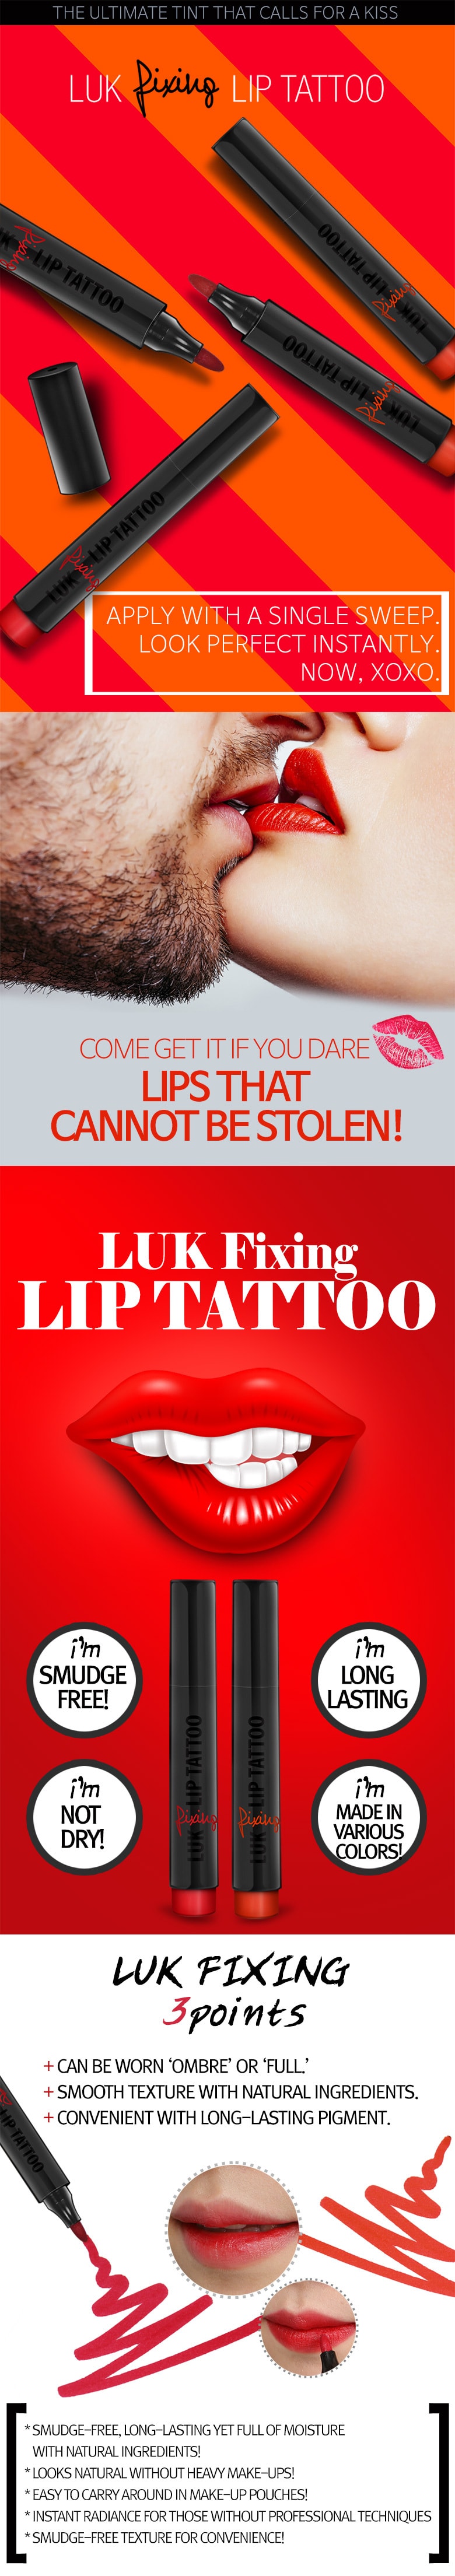 Fixing Lip Tattoo #Red